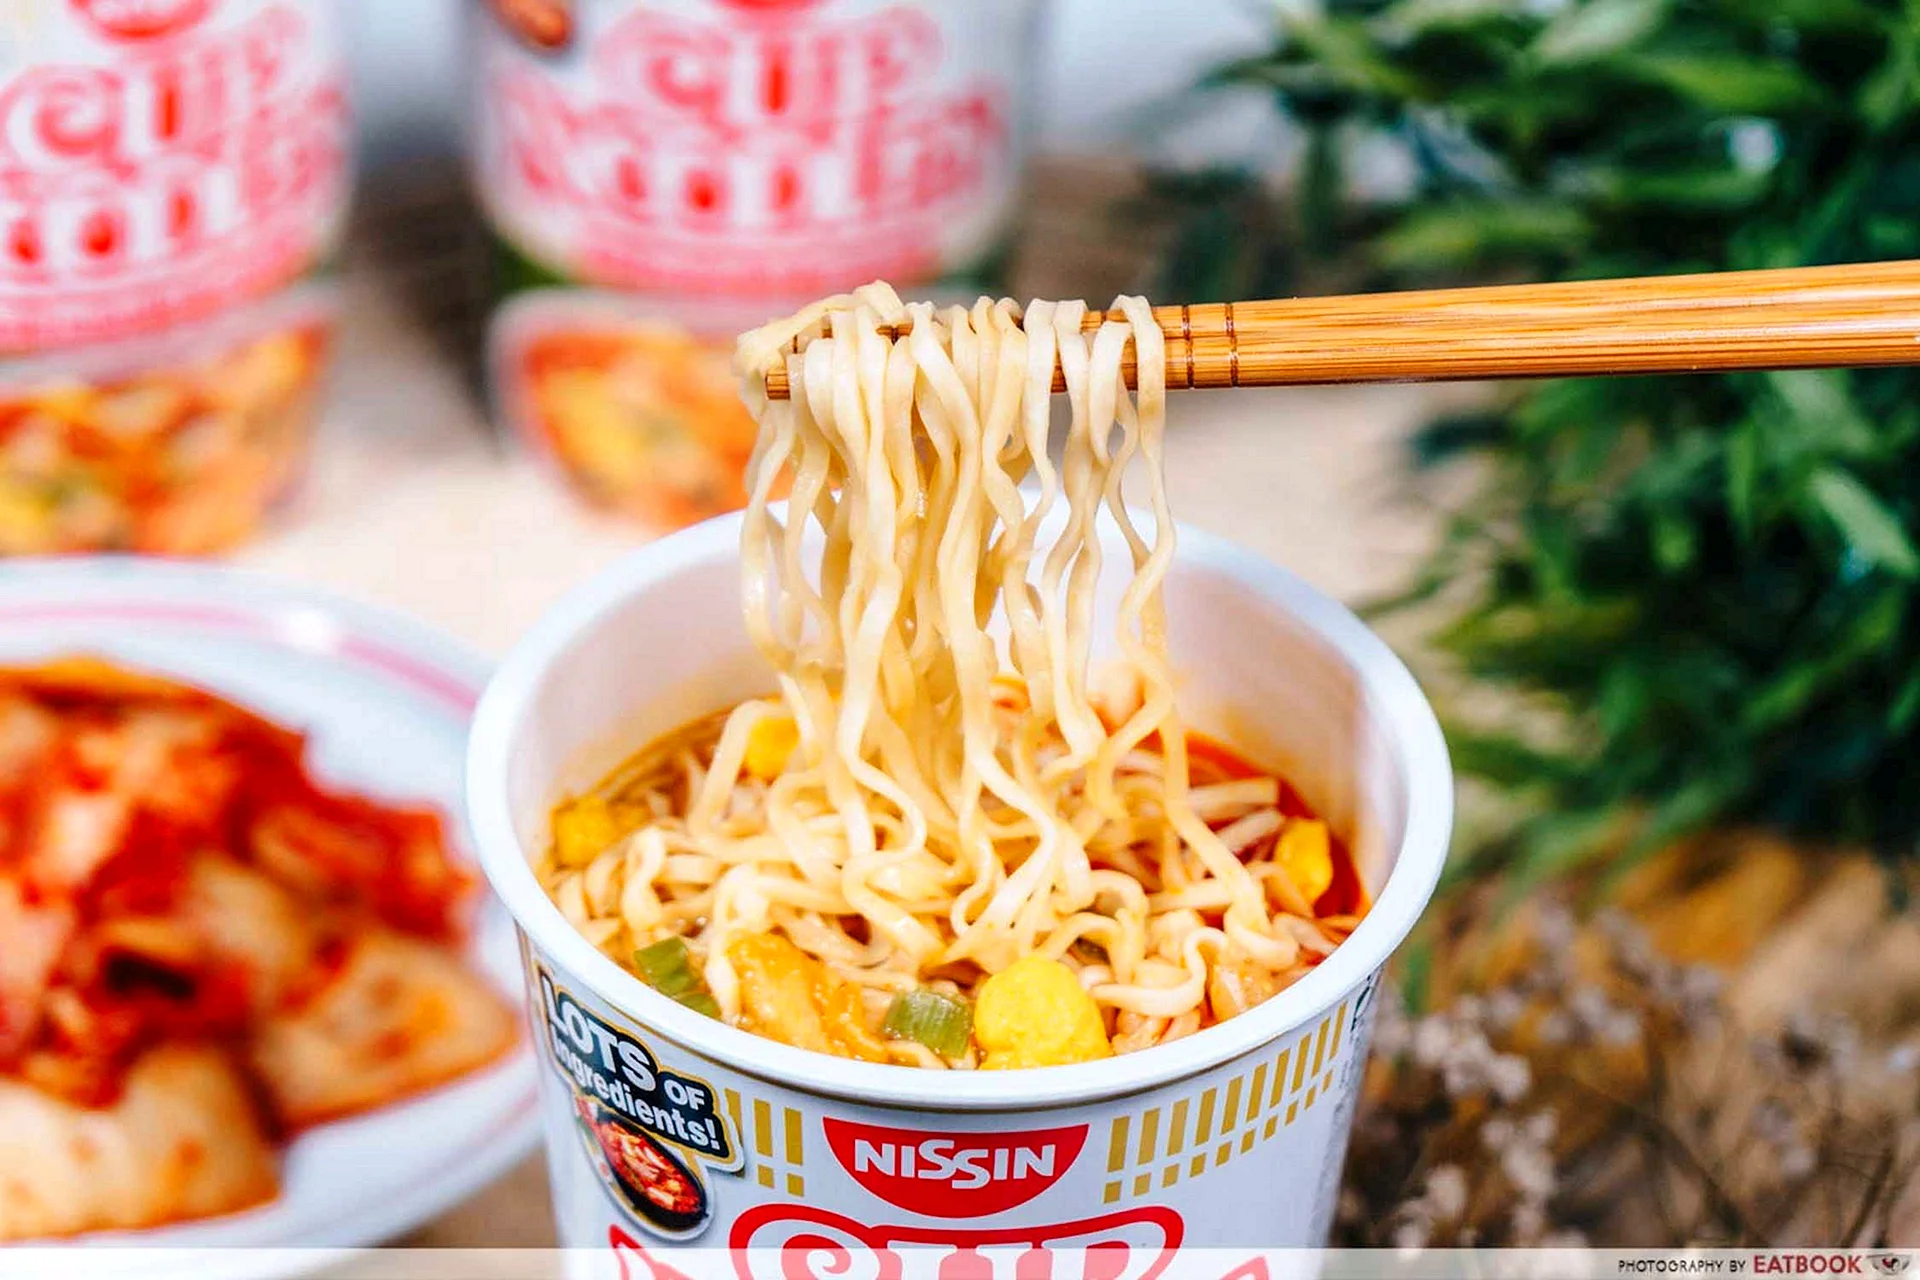 Nissin instant Noodles